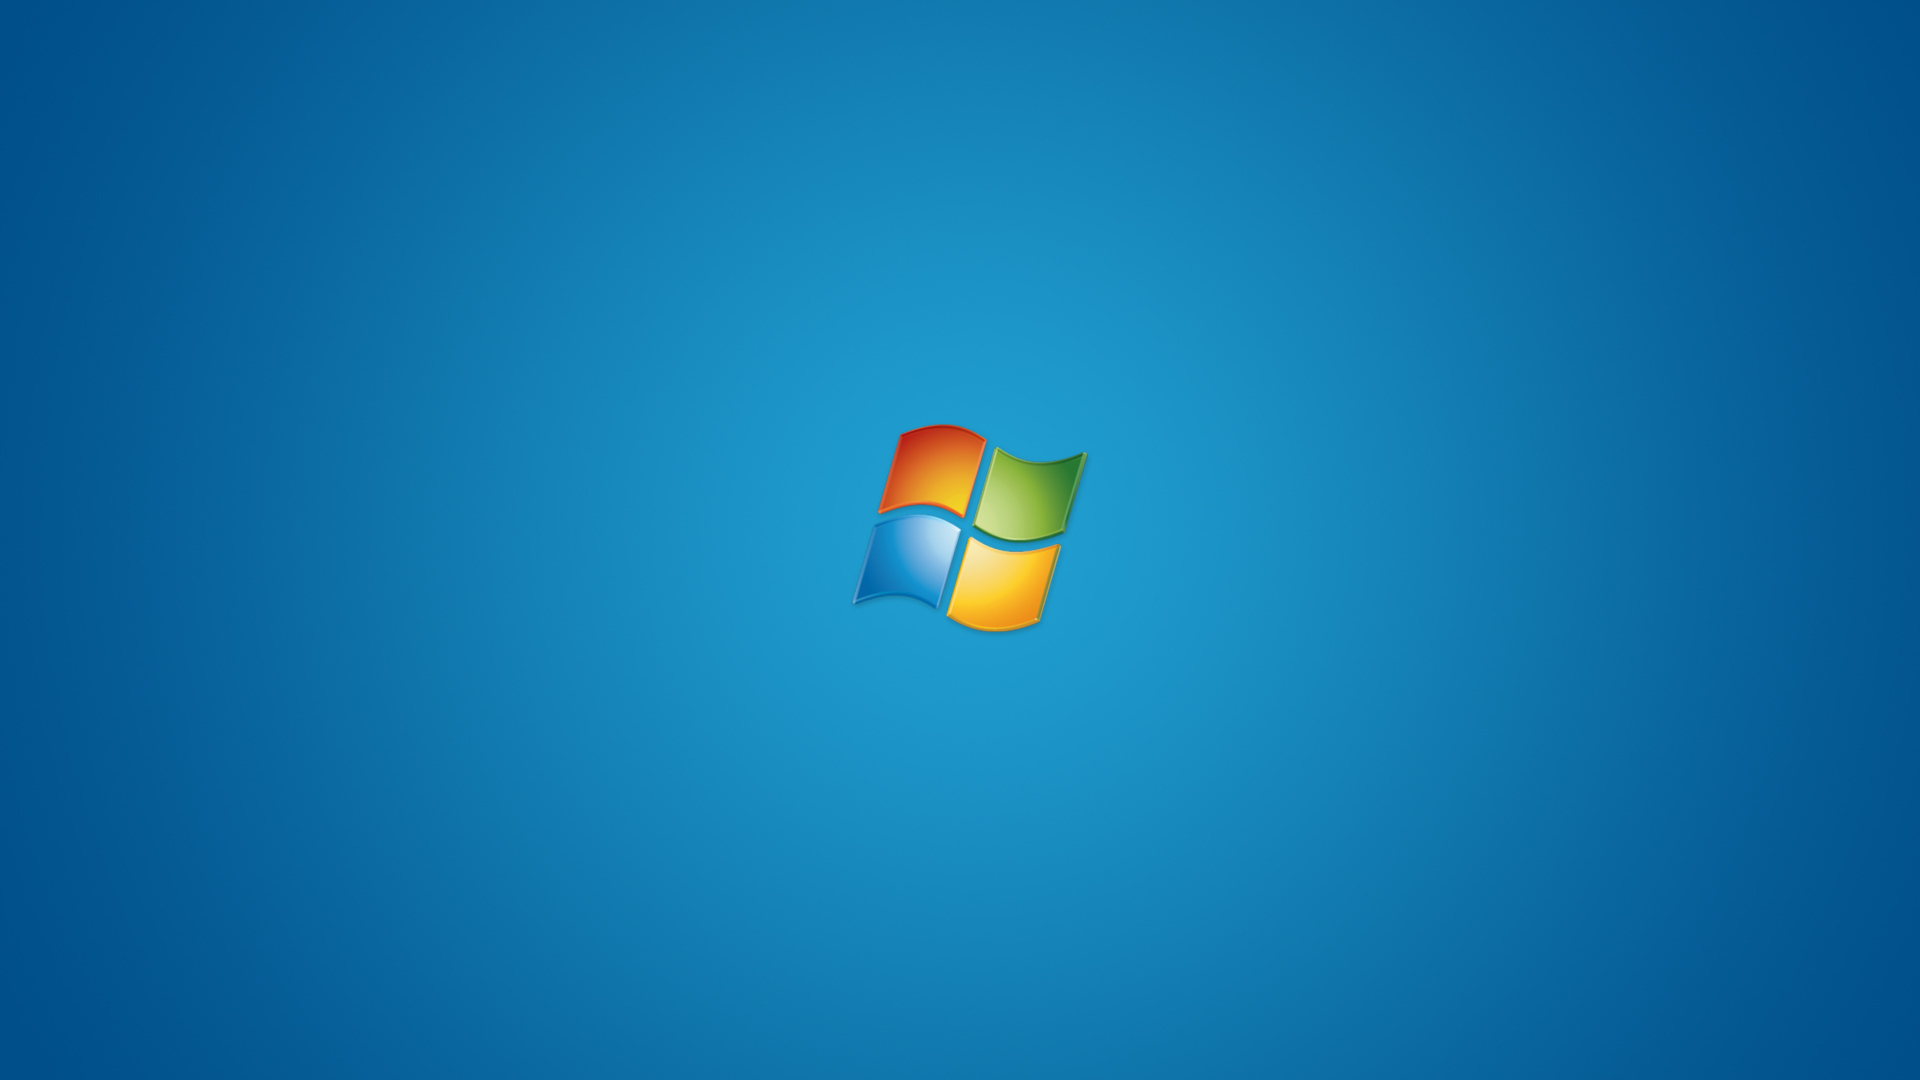 Free Microsoft Desktop Wallpaper HD 1920x1080